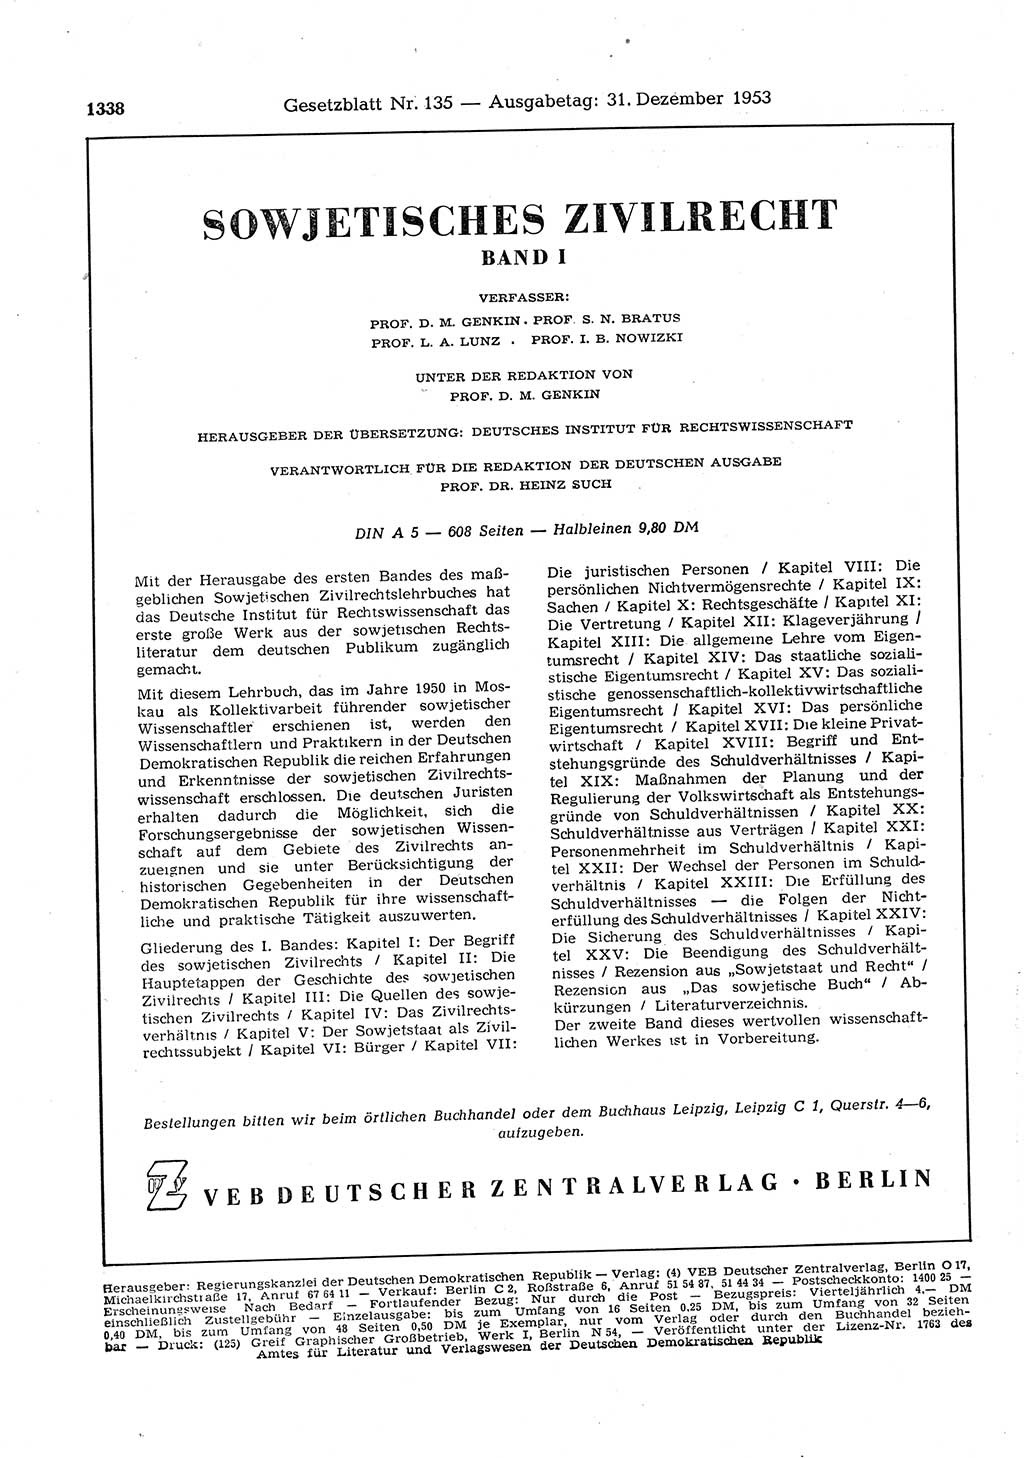 Gesetzblatt (GBl.) der Deutschen Demokratischen Republik (DDR) 1953, Seite 1338 (GBl. DDR 1953, S. 1338)